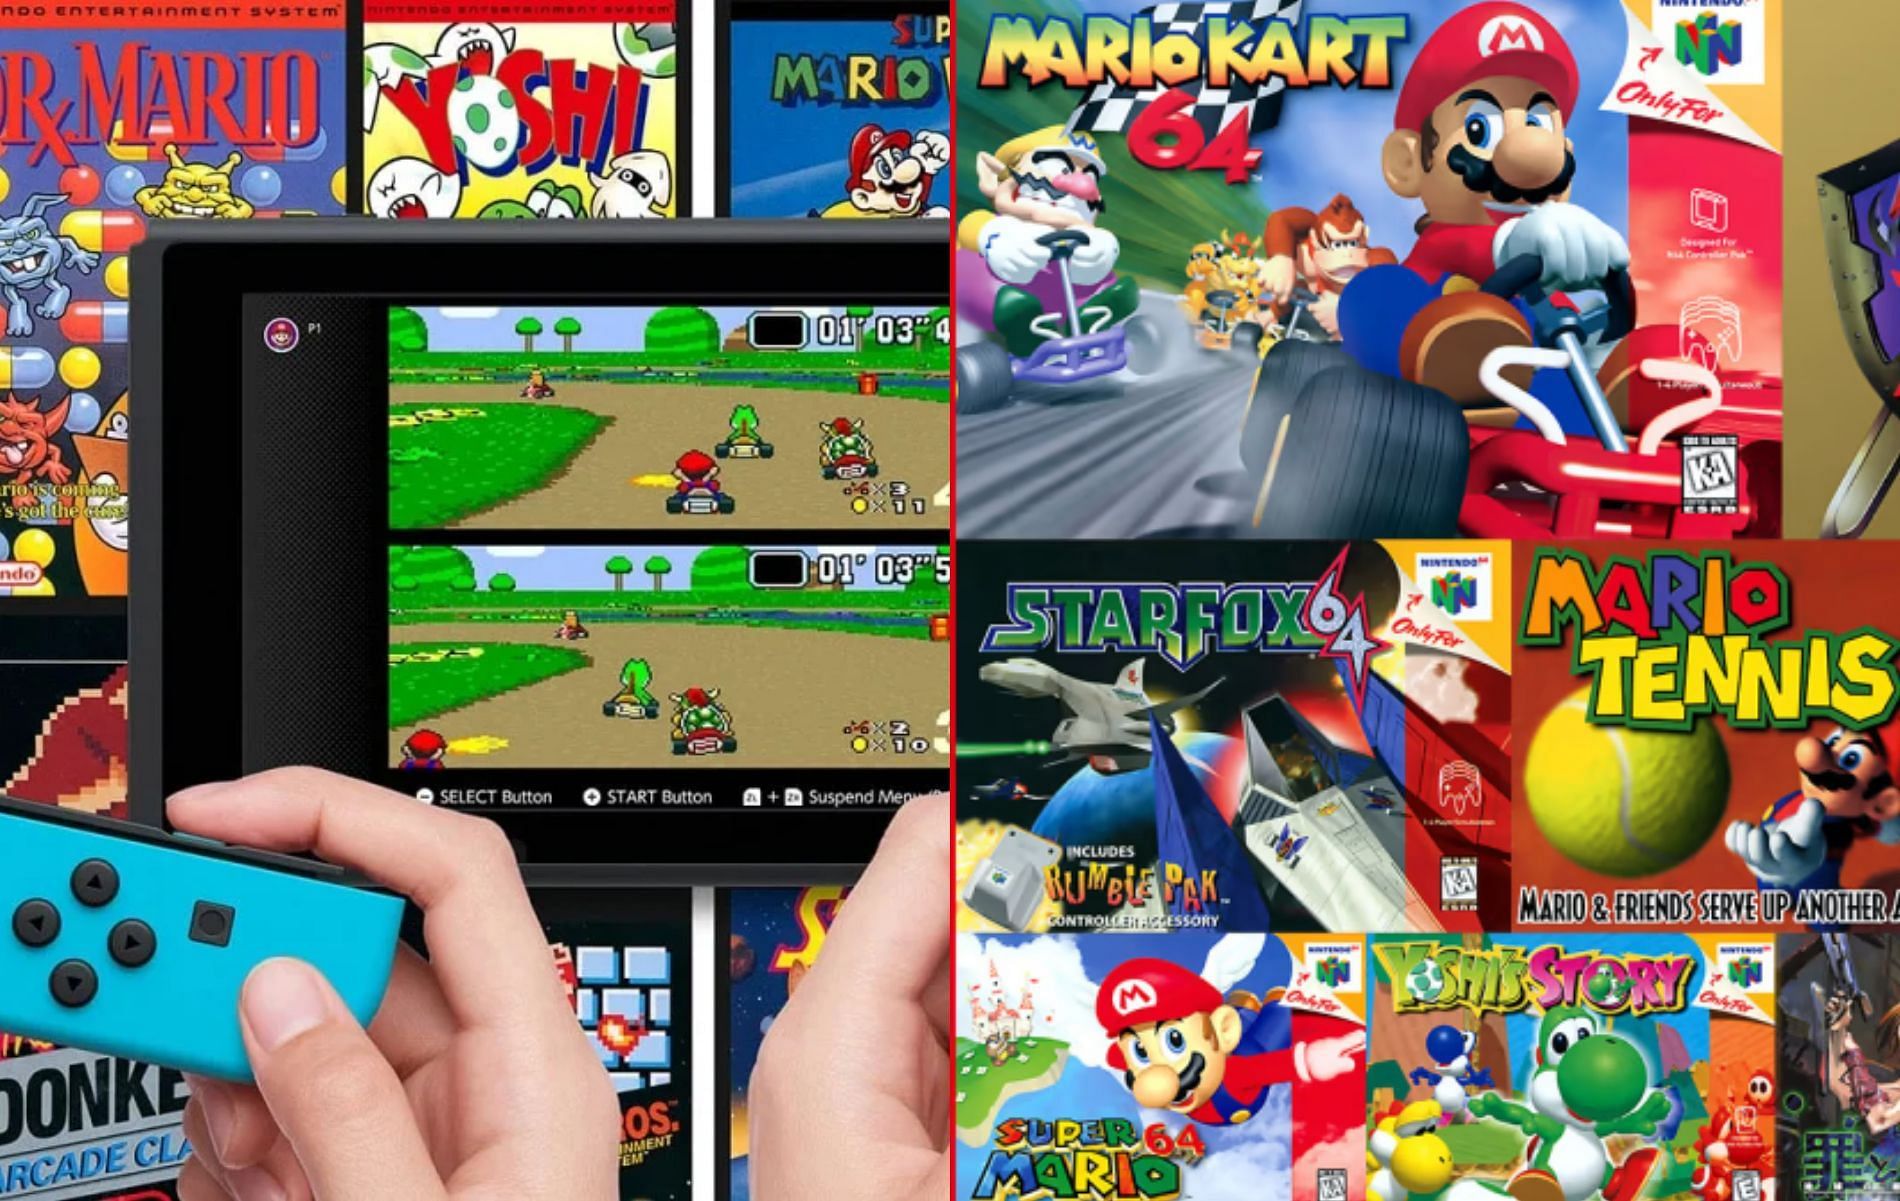 Nostalgia! Clássico do Nintendo 64 chegará ao Switch Online na próxima  semana 